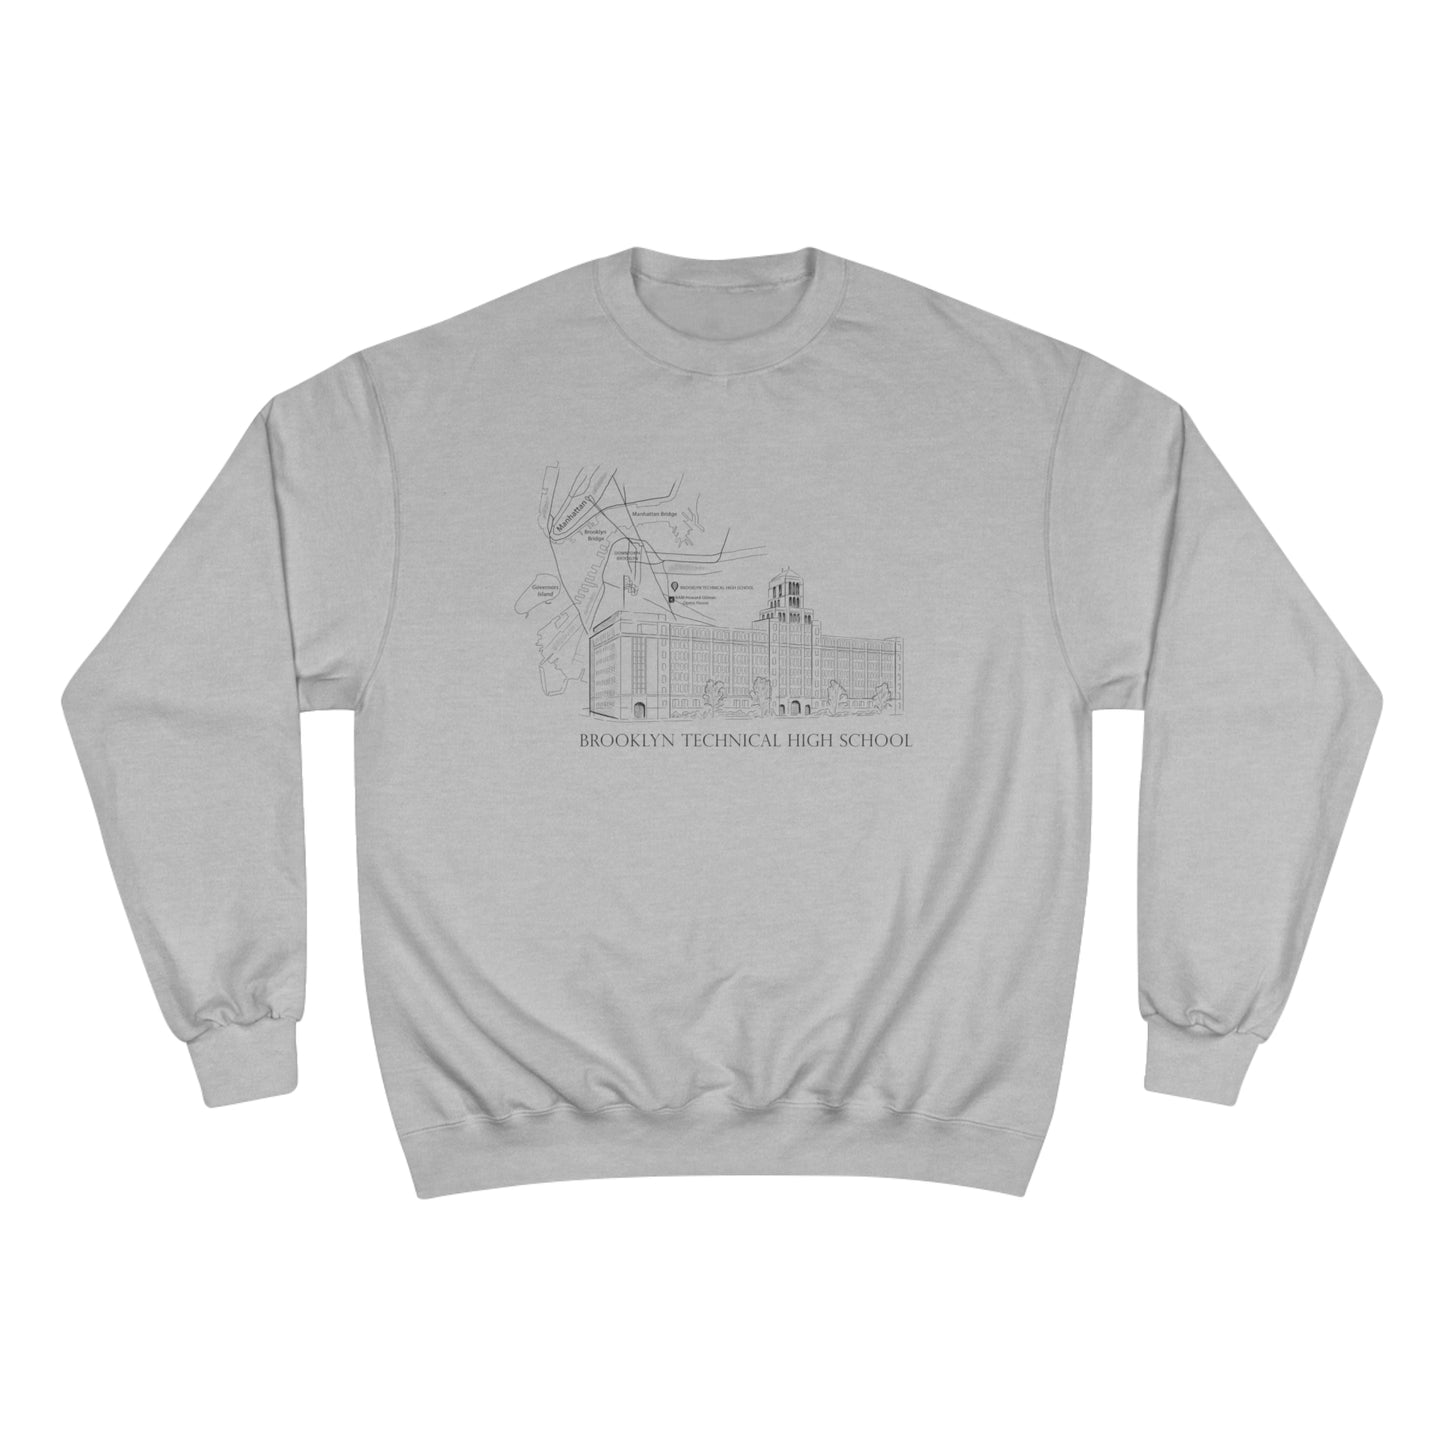 Boutique - Monochrome Building & Map - Champion Crewneck Sweatshirt